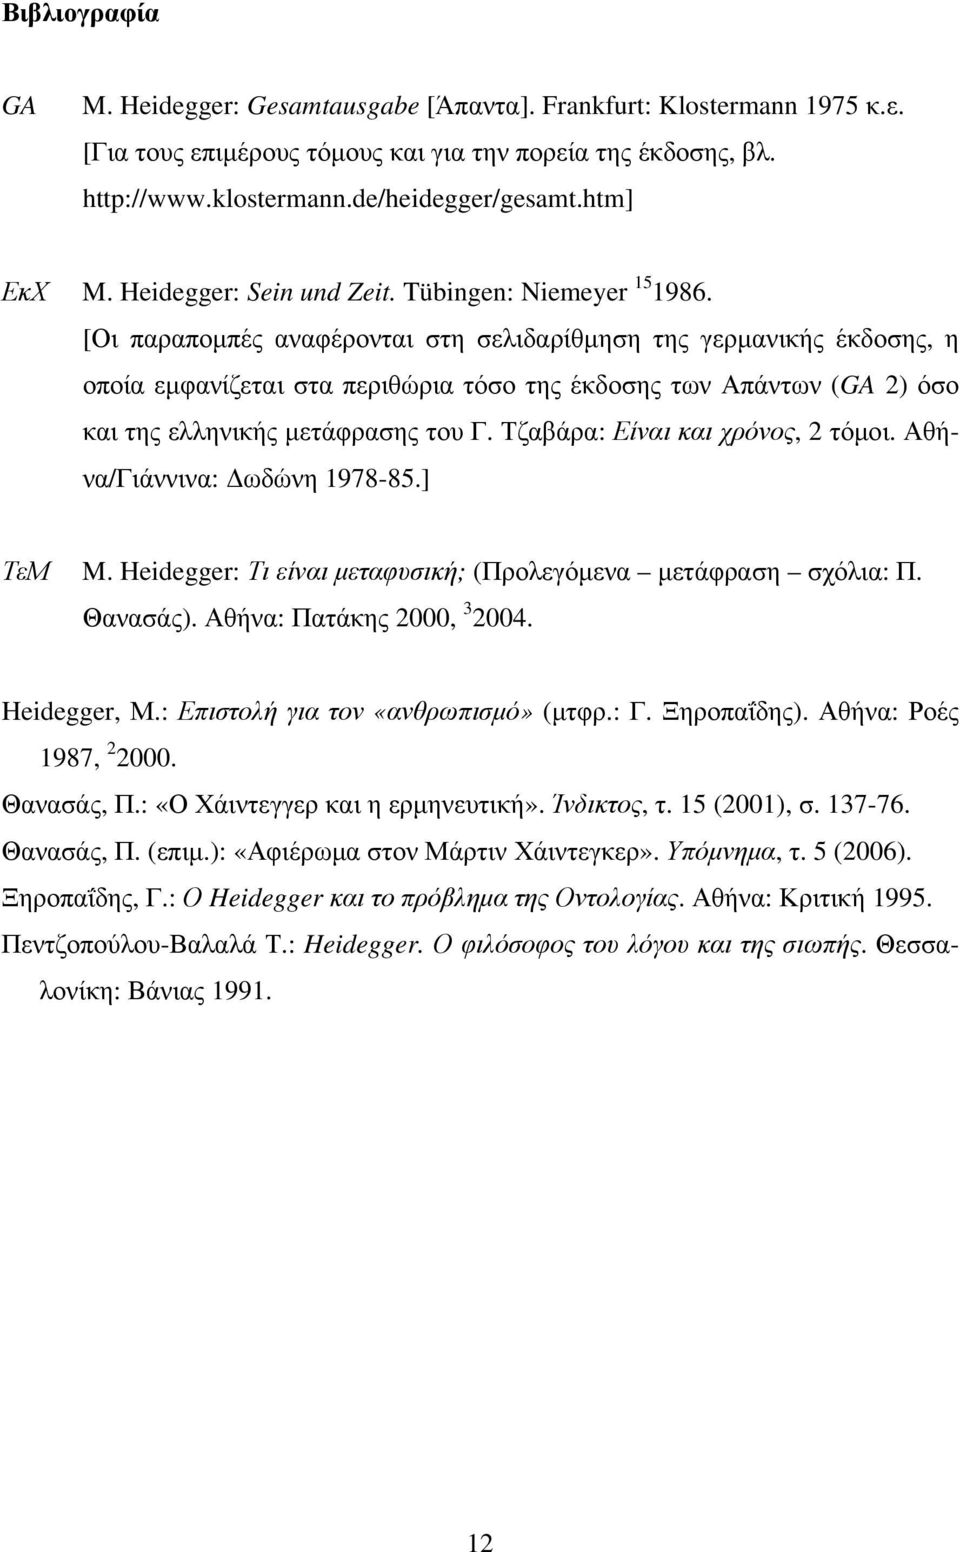 [Οι παραπομπές αναφέρονται στη σελιδαρίθμηση της γερμανικής έκδοσης, η οποία εμφανίζεται στα περιθώρια τόσο της έκδοσης των Απάντων (GA 2) όσο και της ελληνικής μετάφρασης του Γ.